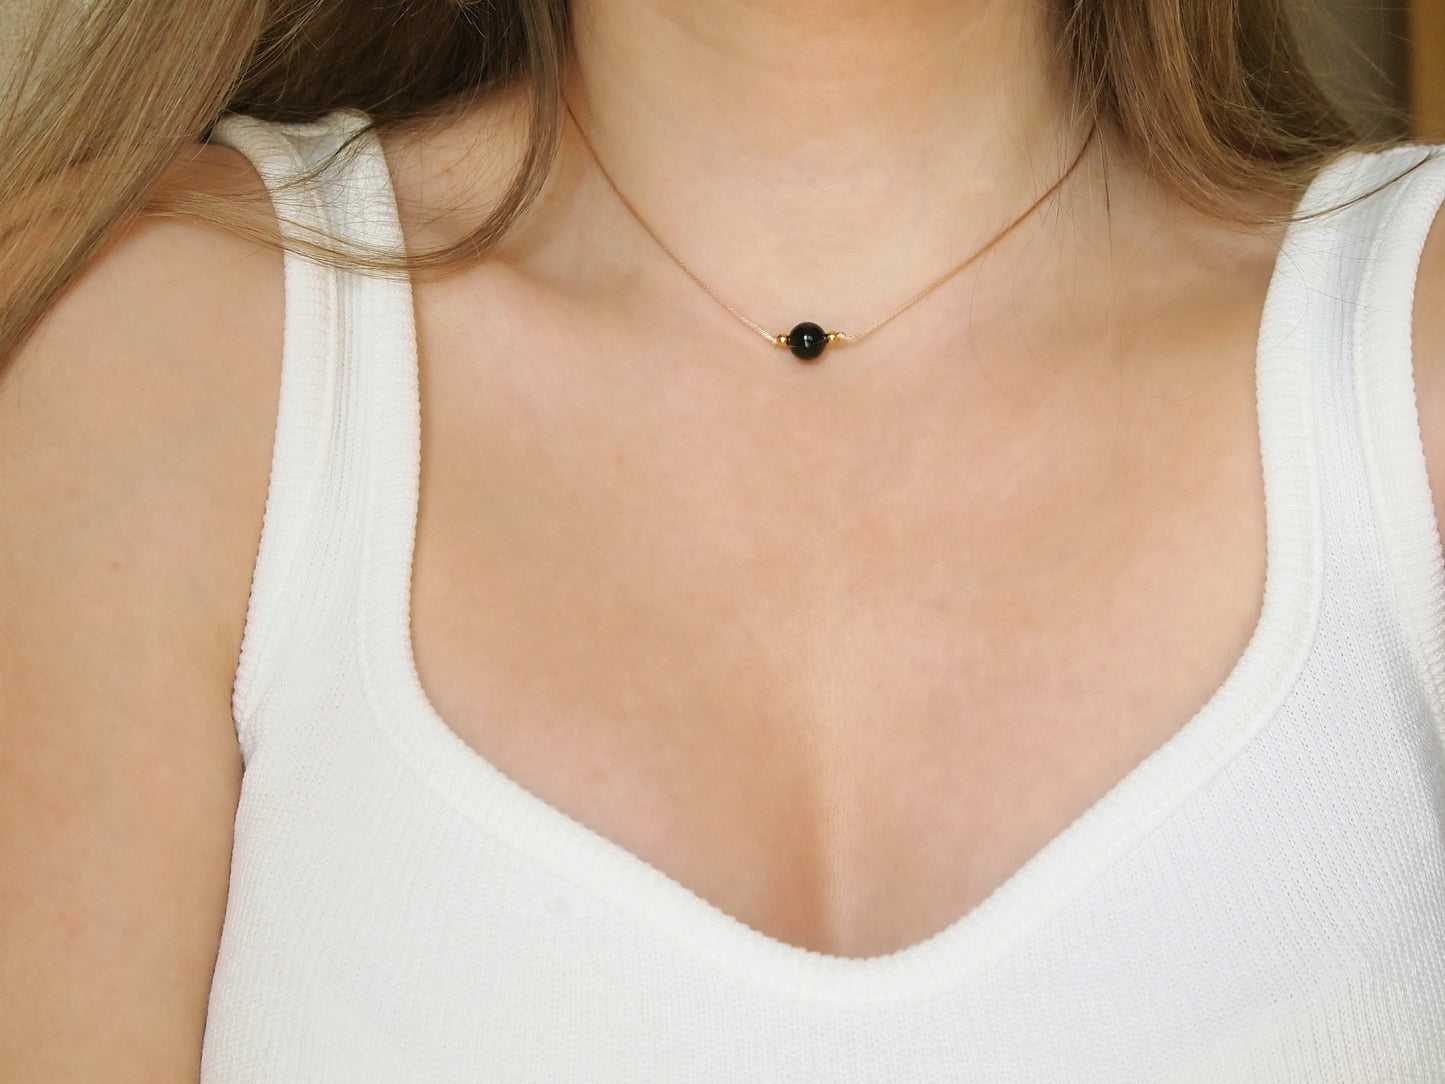 dainty feminine necklace with black tourmaline